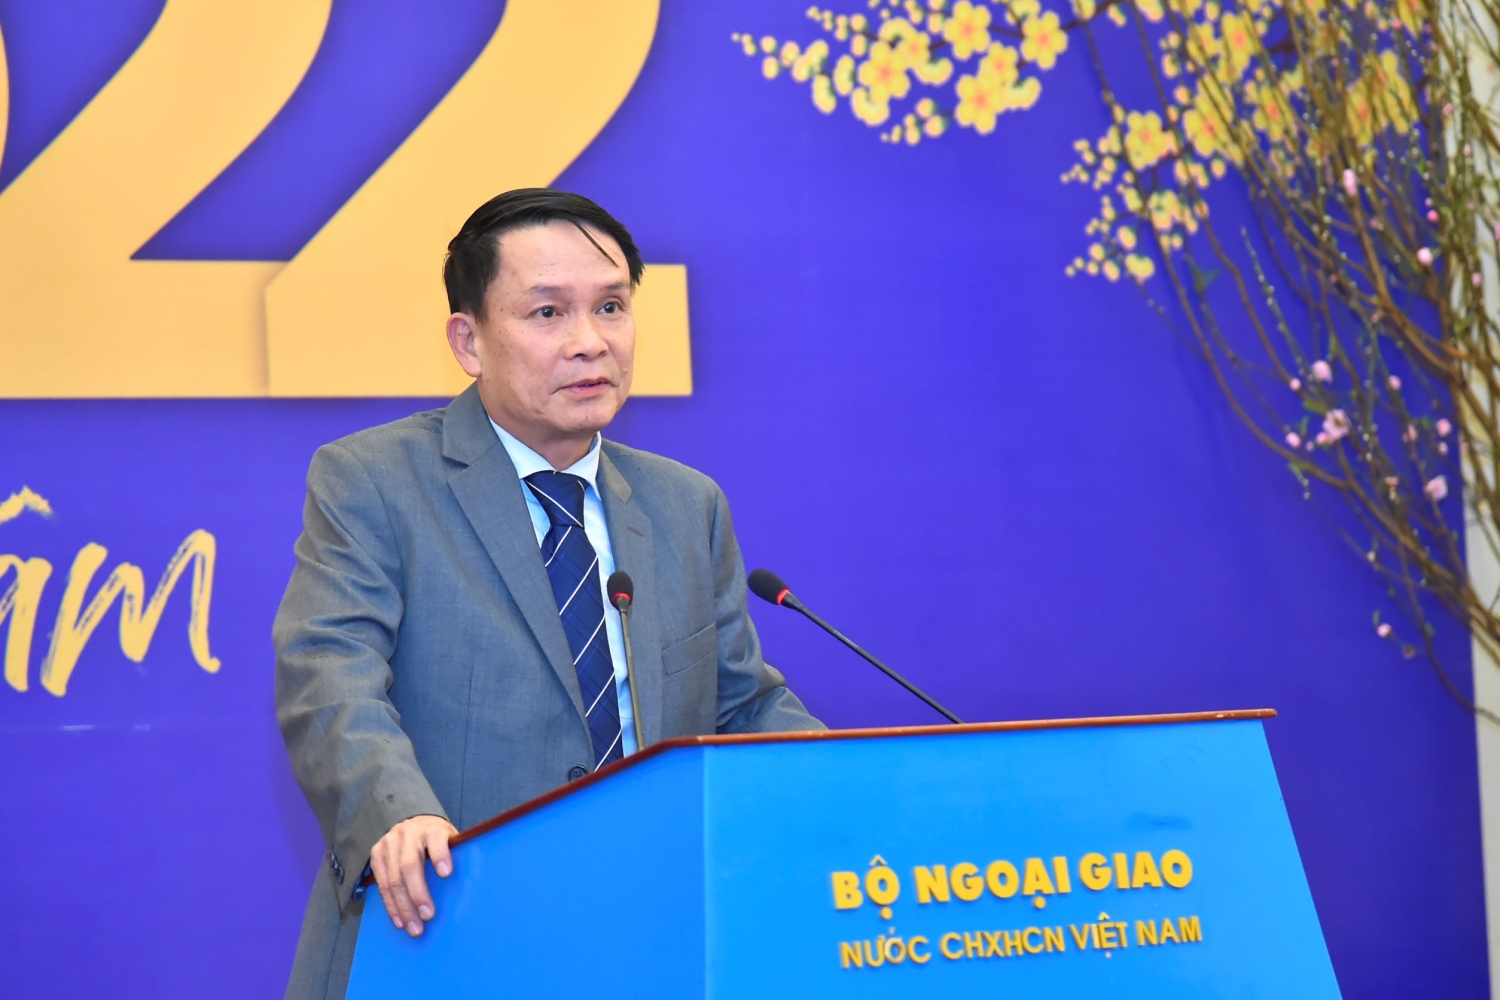 Bộ trưởng Ngoại giao Bùi Thanh Sơn gặp gỡ báo chí đầu năm